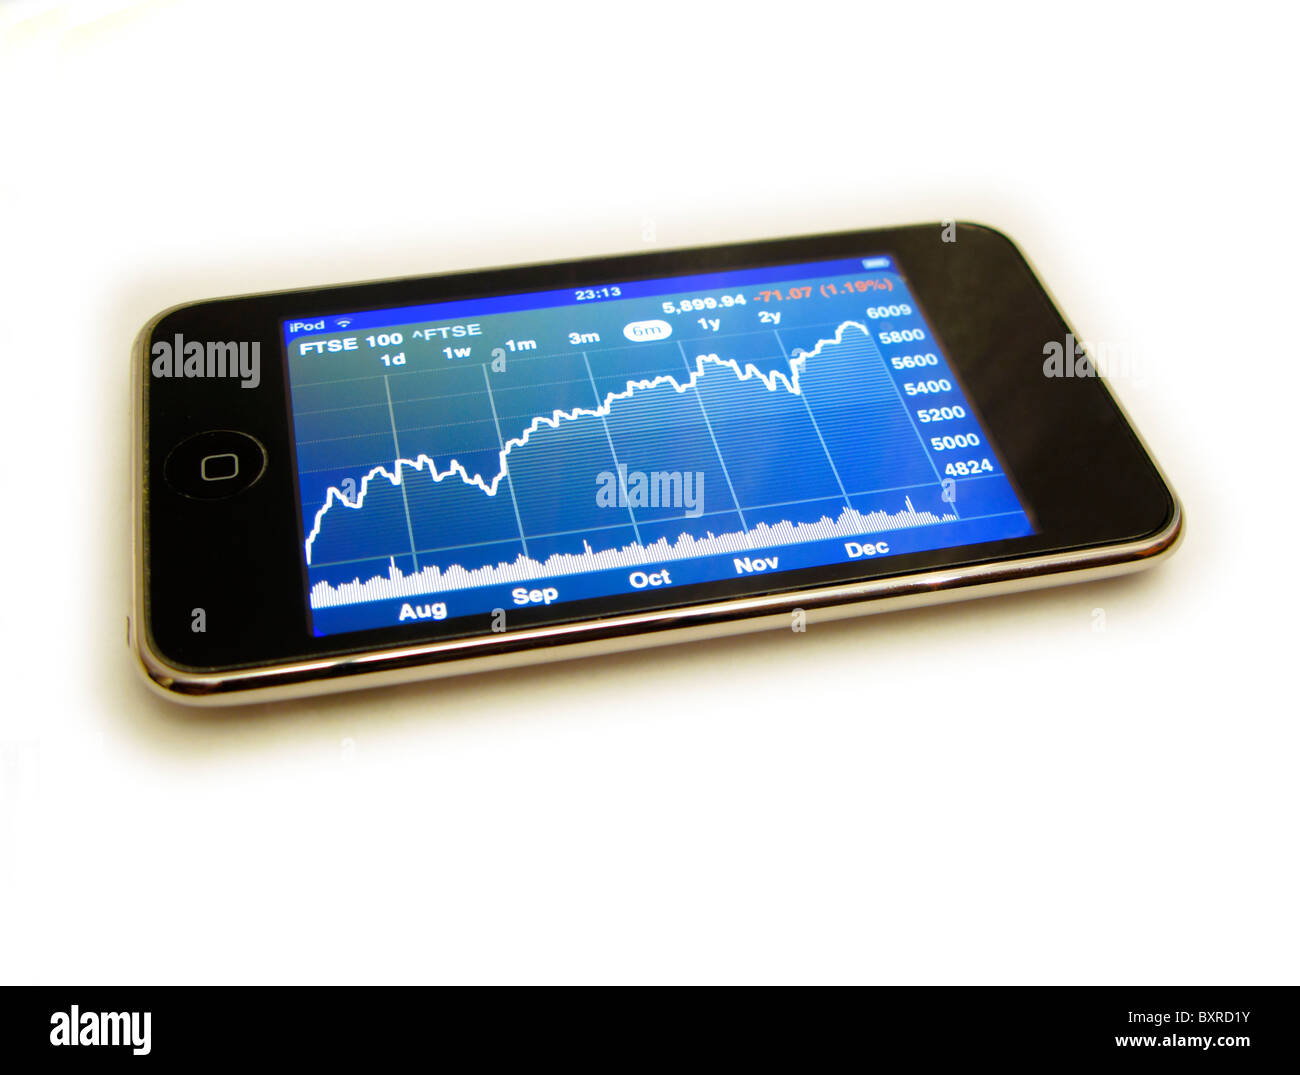 Spaccato di ipod touch mostra FTSE 100 stock market grafico alla fine del 2010 su sfondo bianco Foto Stock